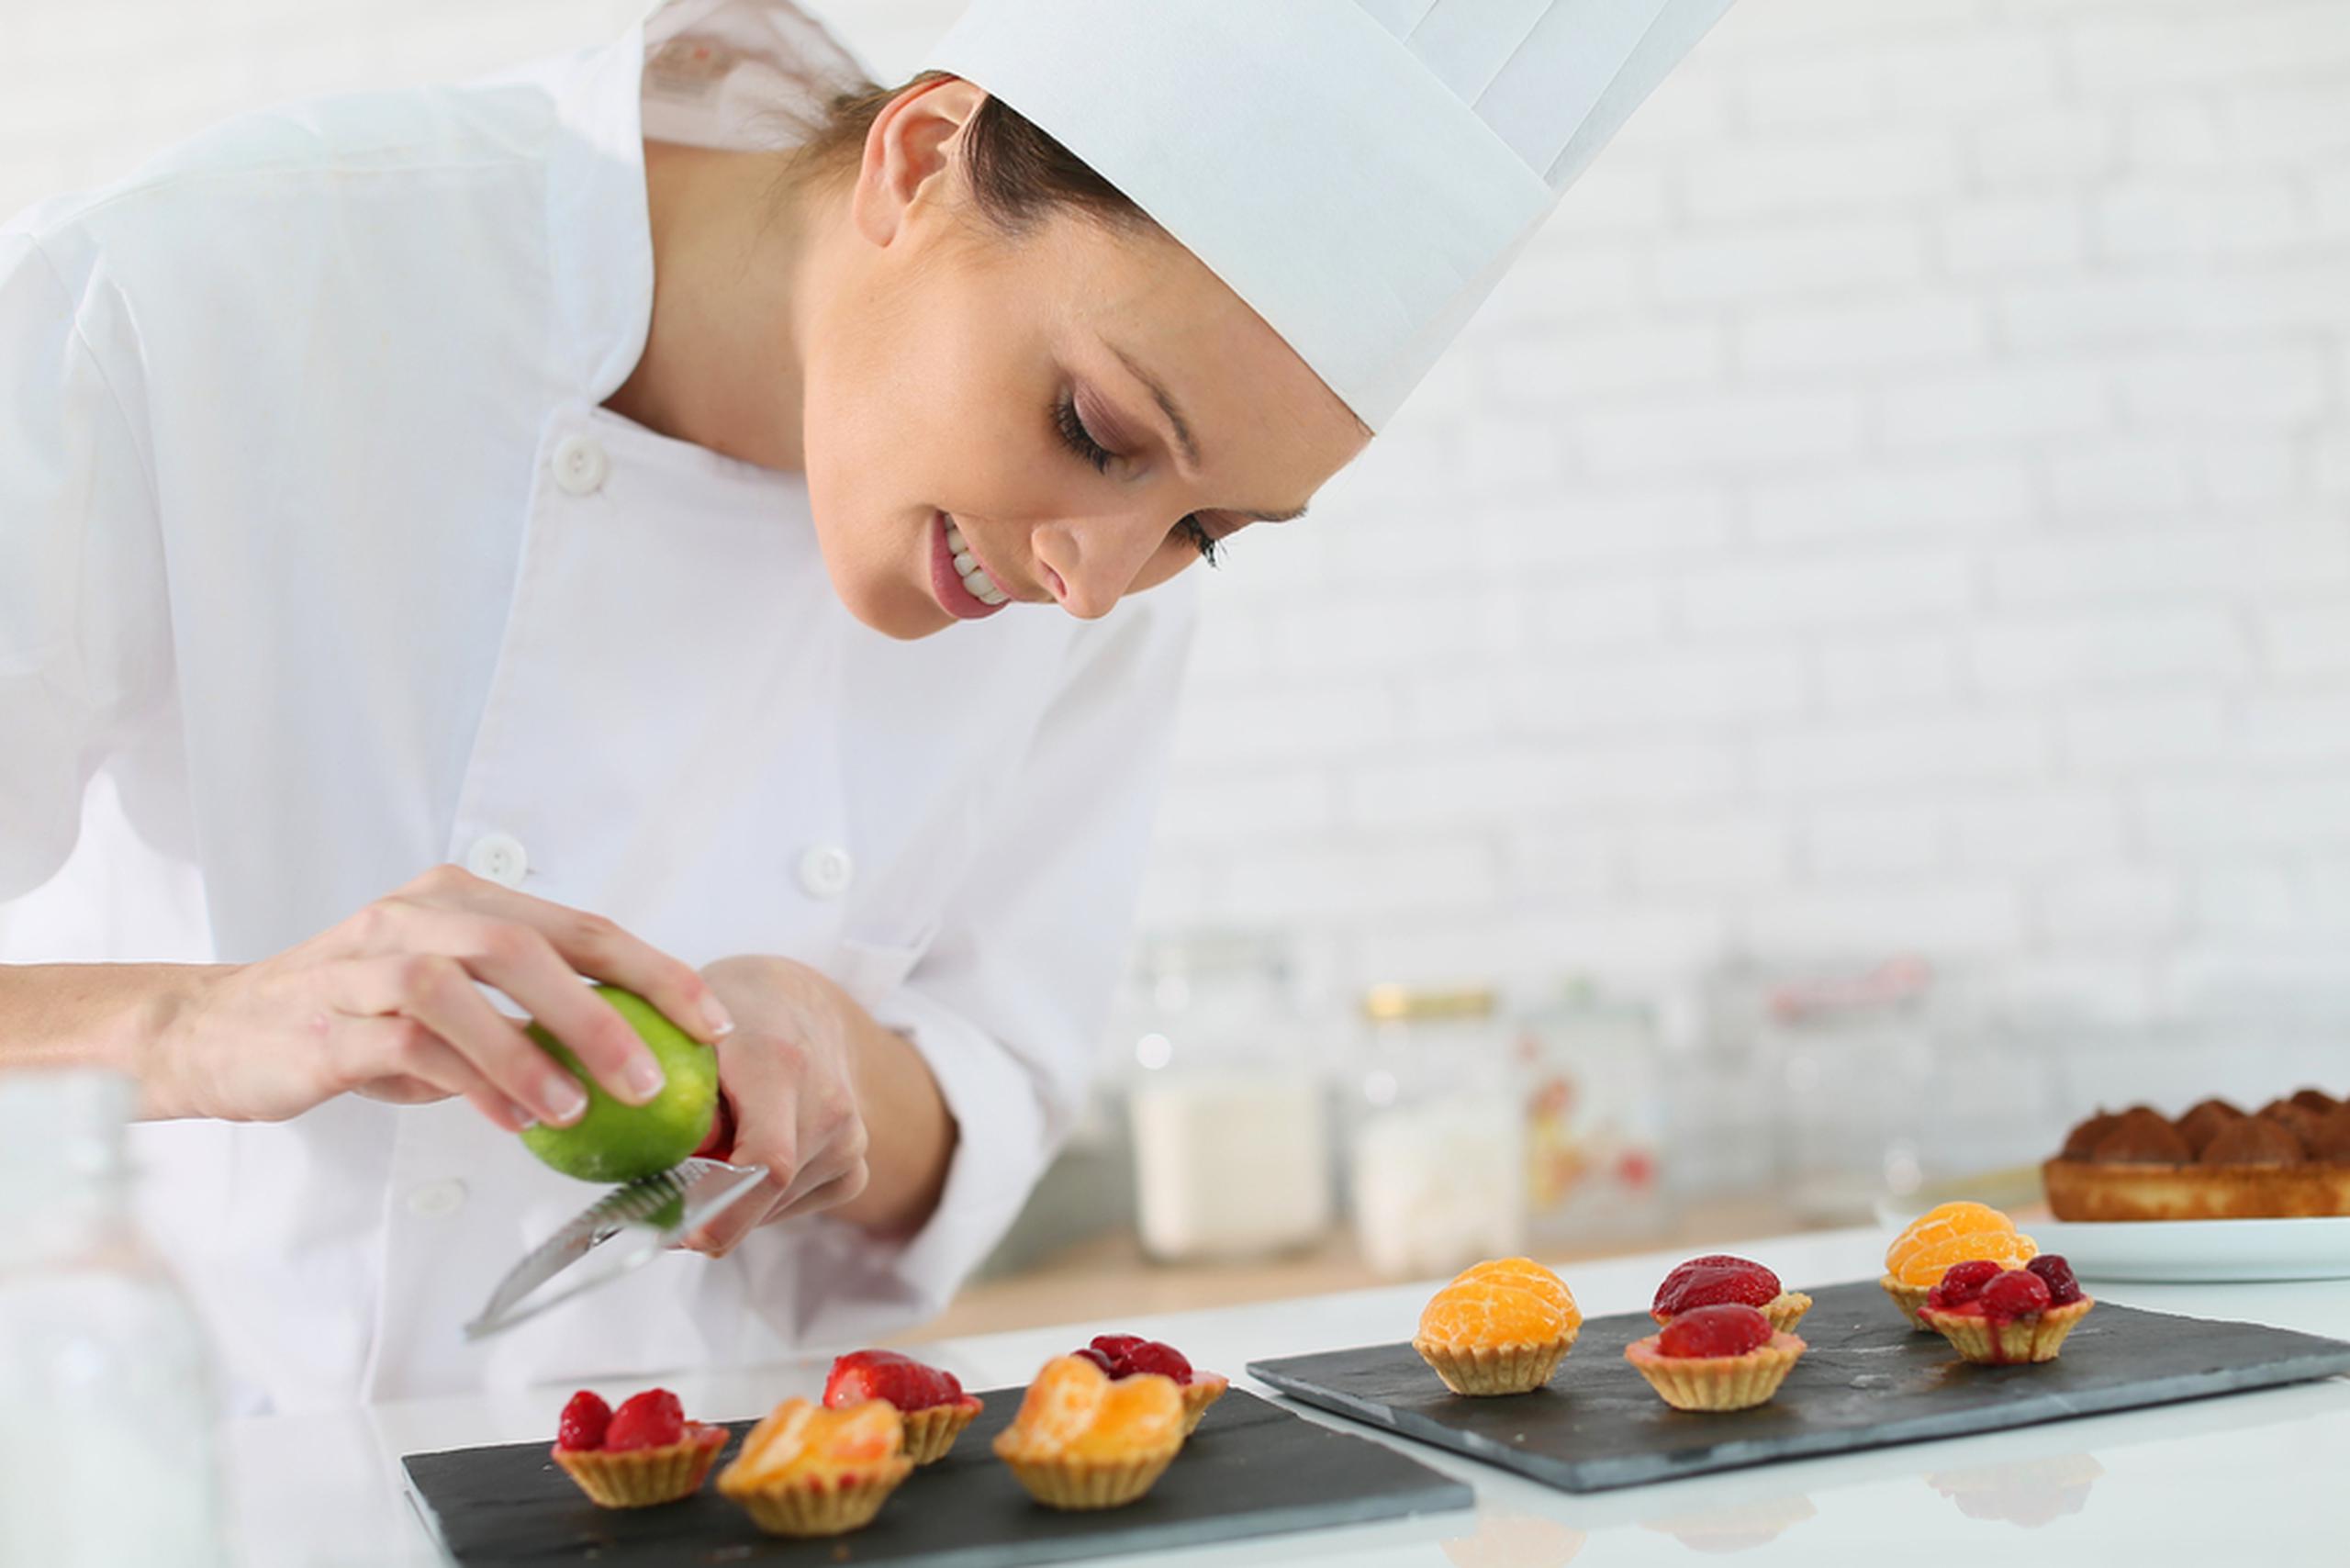 Si te interesa obtener un grado asociado o un certificado profesional, podrás prepararte en áreas como la gastronomía.